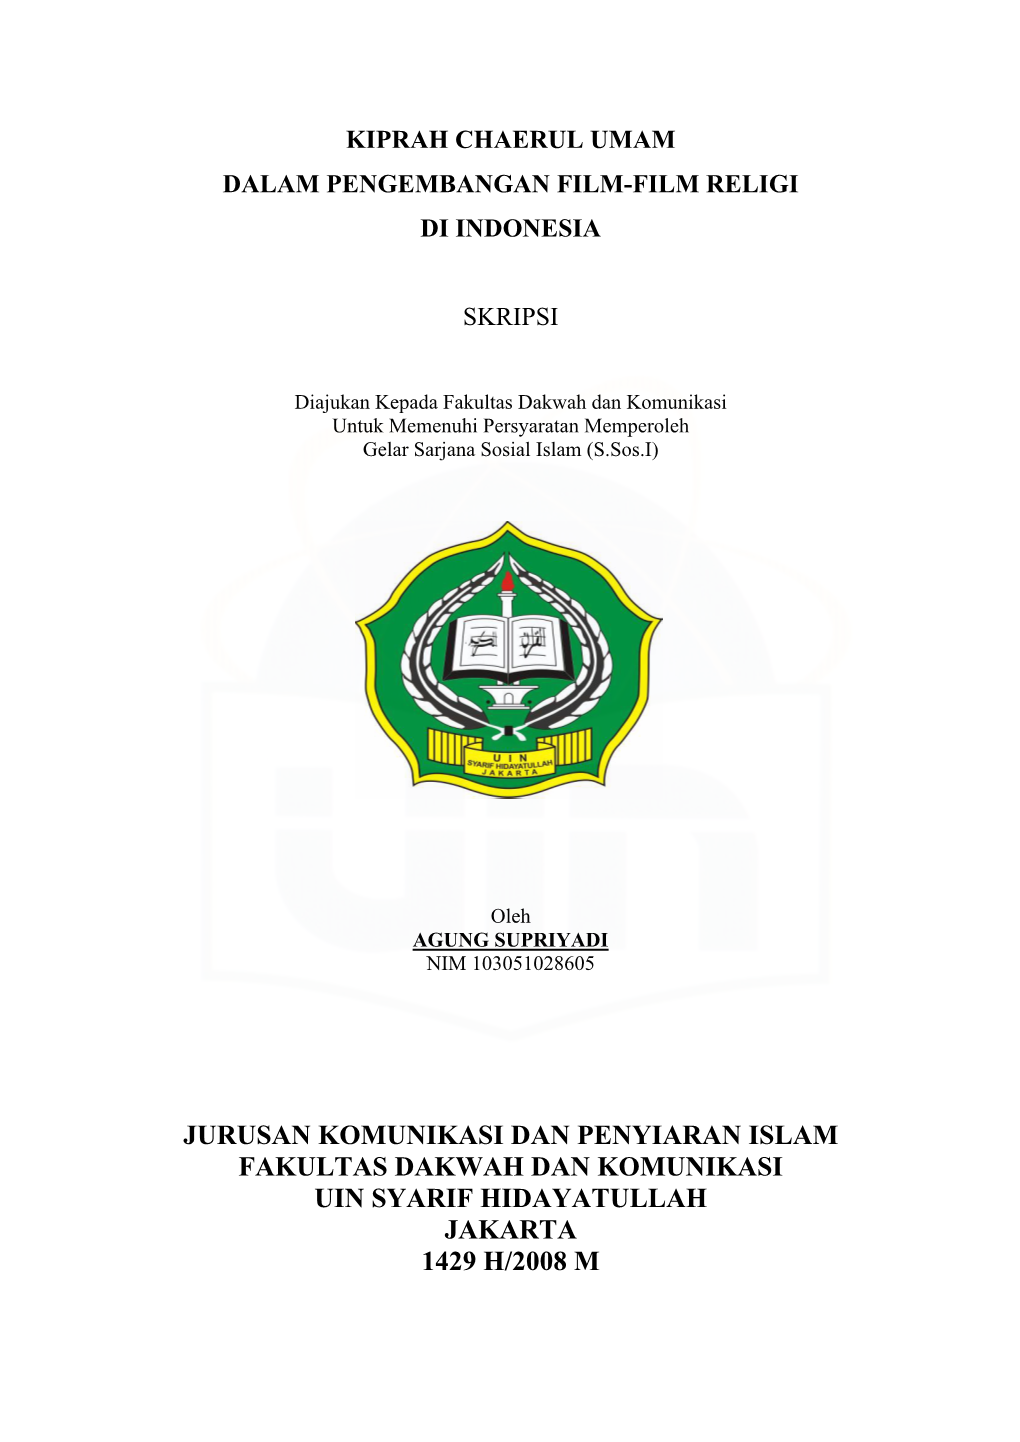 Jurusan Komunikasi Dan Penyiaran Islam Fakultas Dakwah Dan Komunikasi Uin Syarif Hidayatullah Jakarta 1429 H/2008 M